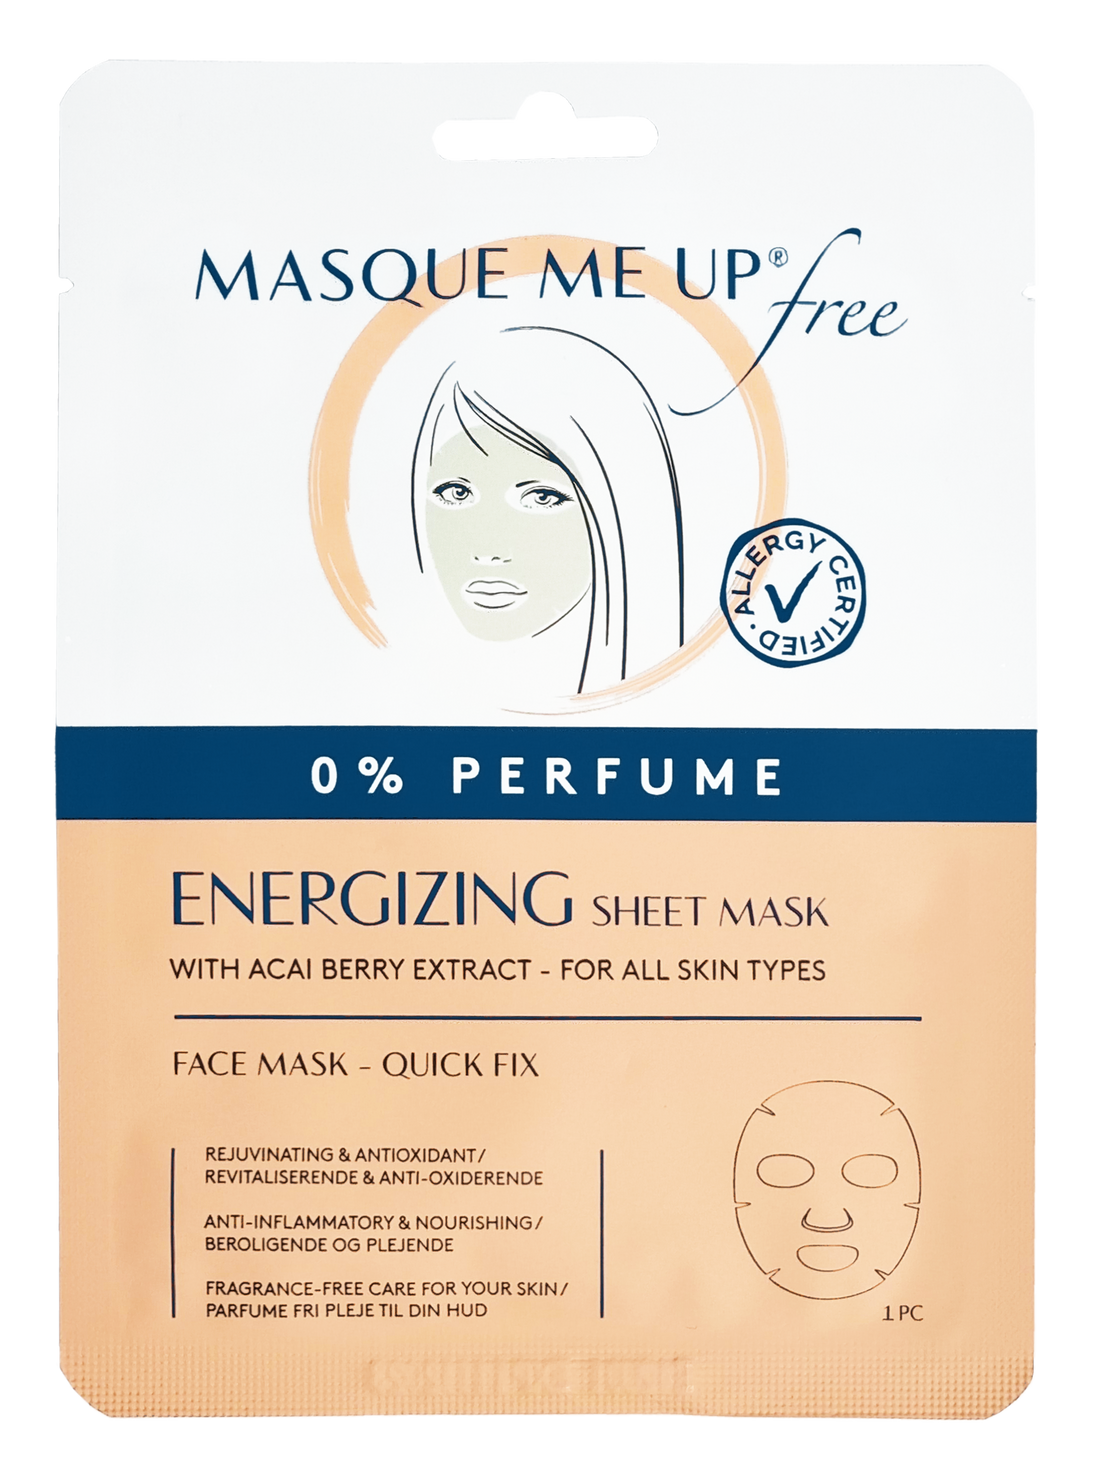 Free Energizing Sheet Mask